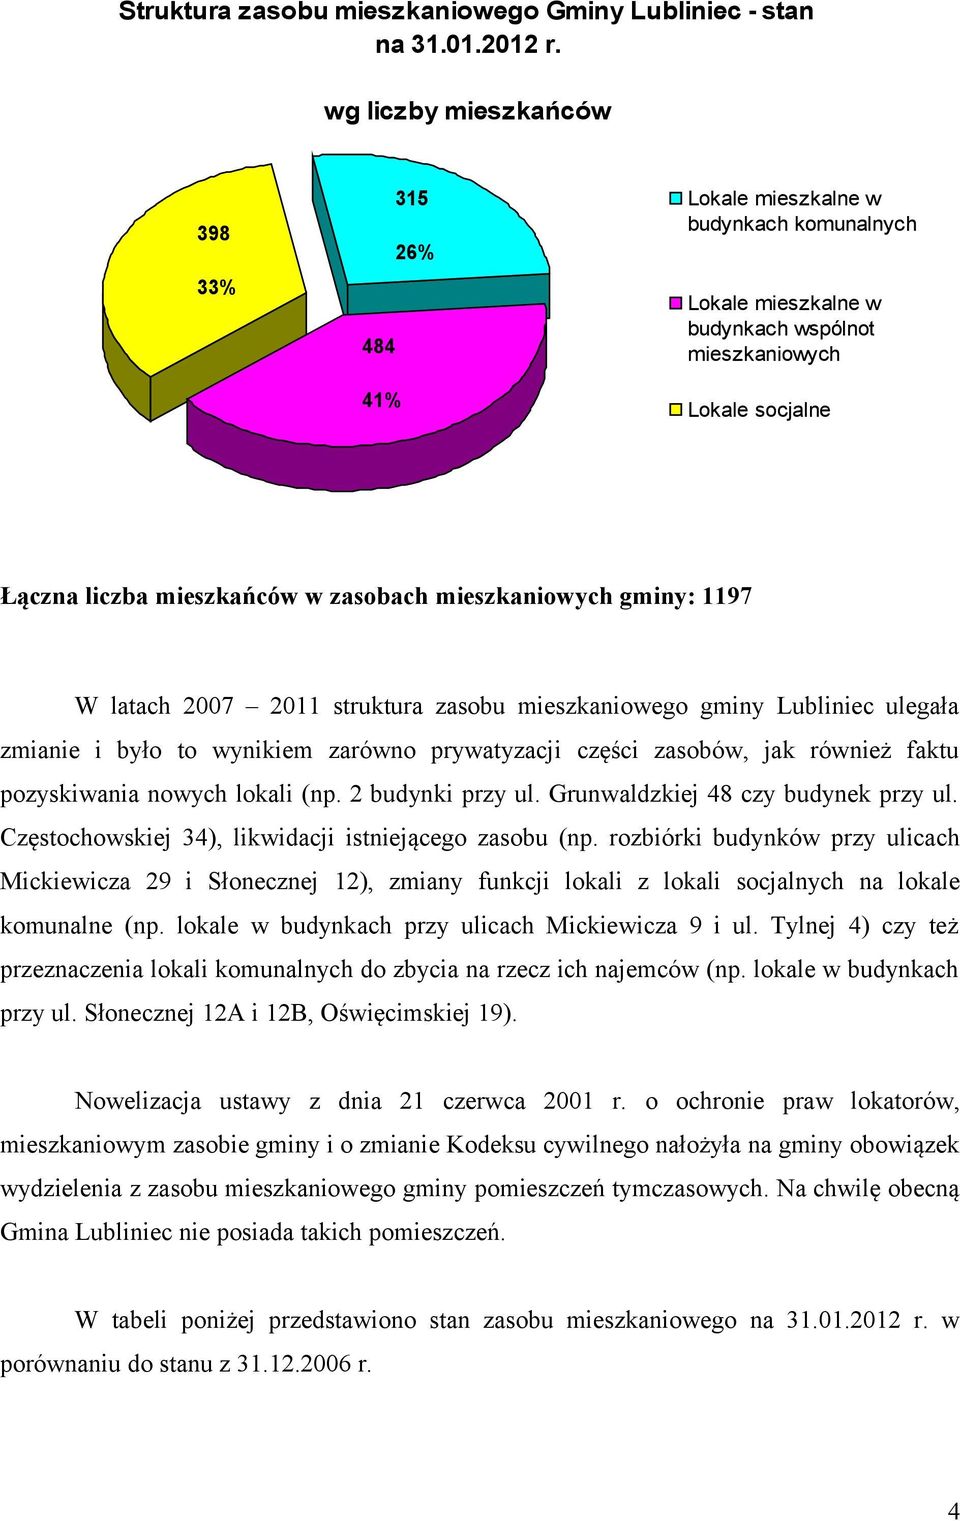 mieszkaniowych gminy: 1197 W latach 2007 2011 struktura zasobu mieszkaniowego gminy Lubliniec ulegała zmianie i było to wynikiem zarówno prywatyzacji części zasobów, jak również faktu pozyskiwania